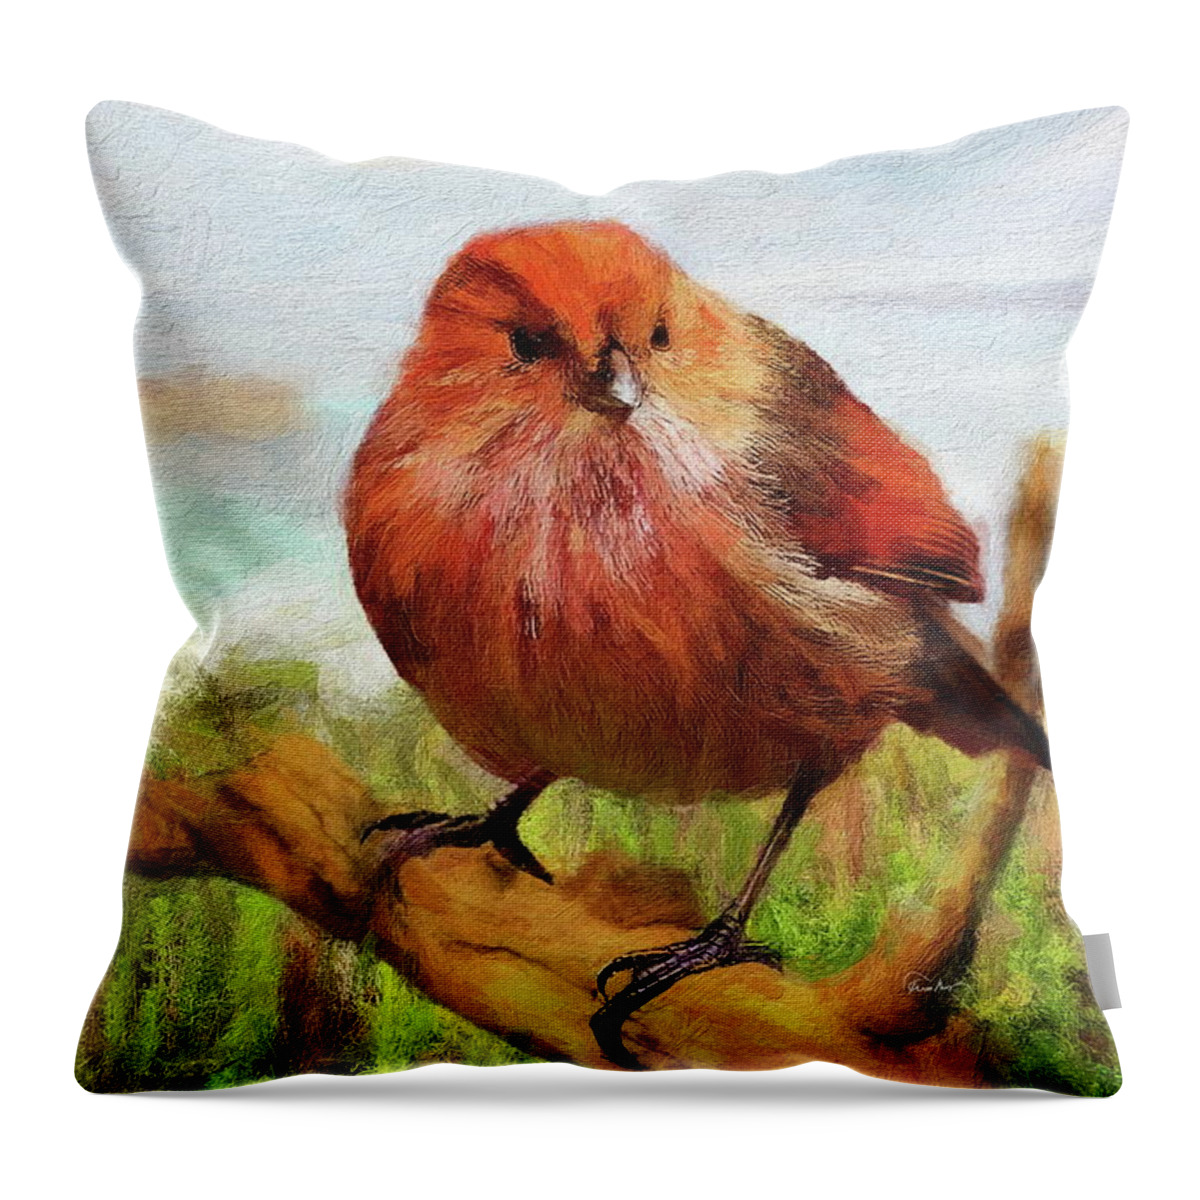 Bird Throw Pillow featuring the digital art Red House Finch - La Jolla by Russ Harris